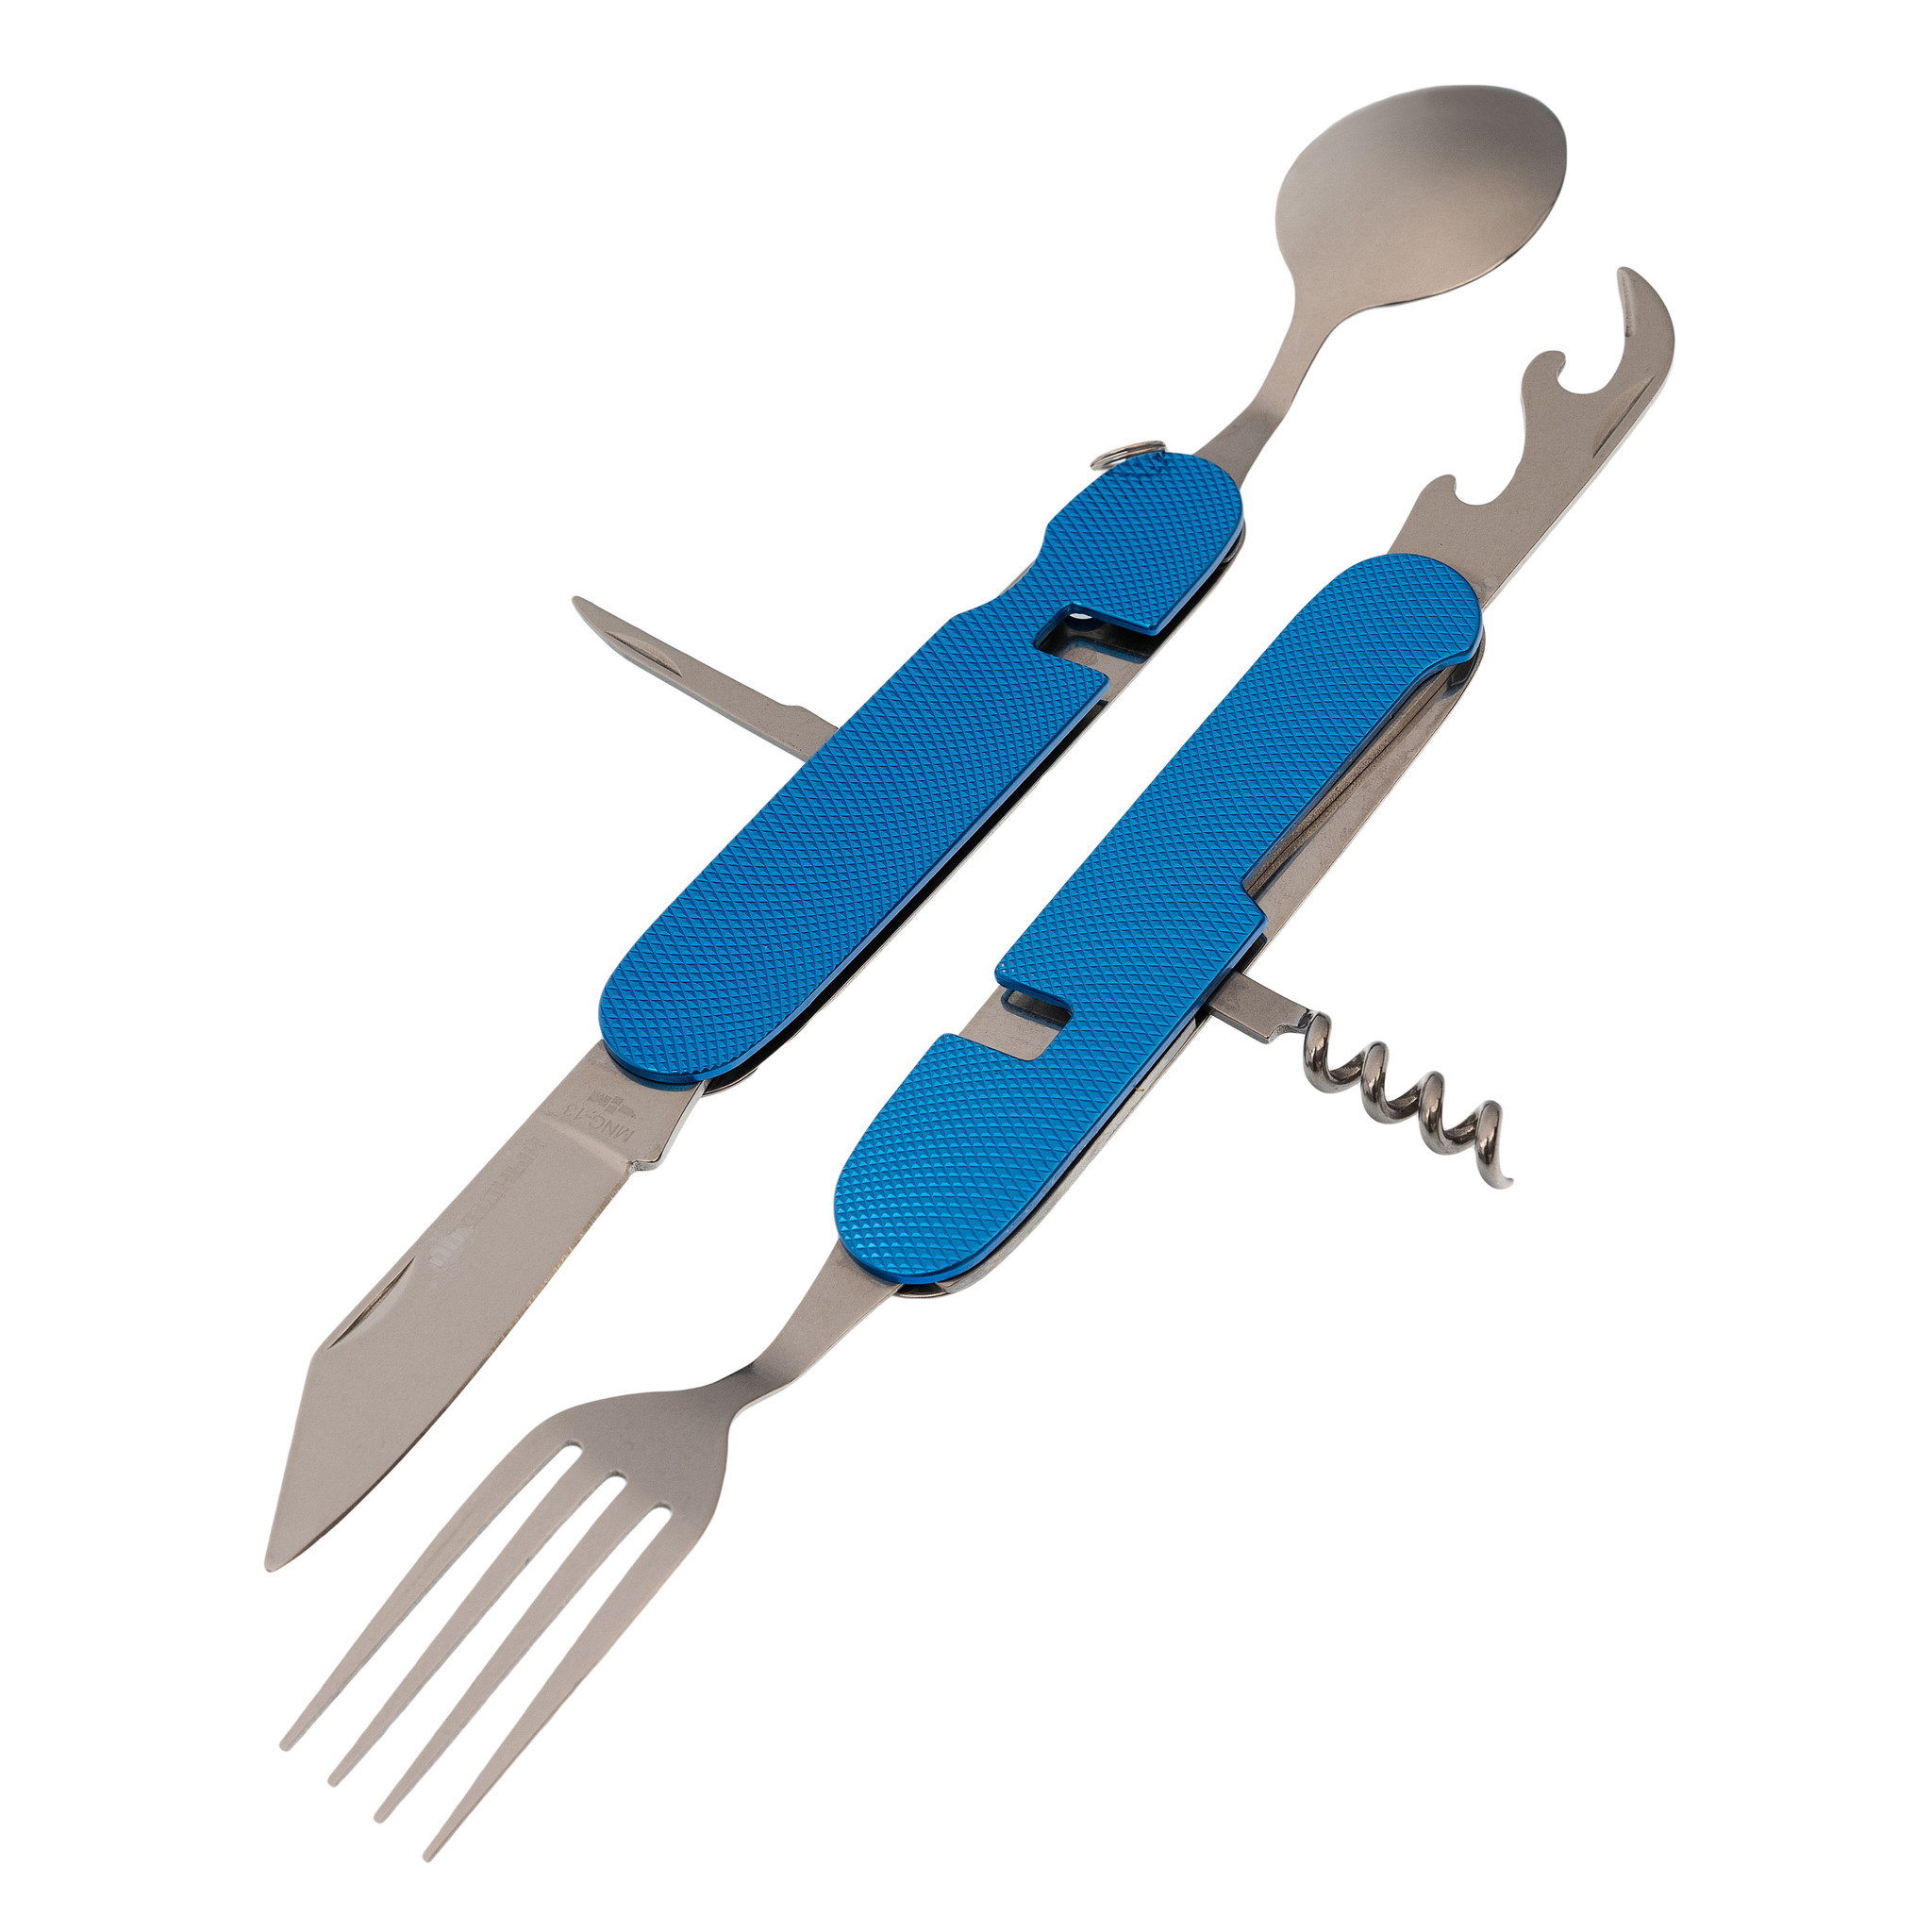 Многофункциональный походный нож (ложка,вилка,нож) 6-в-1, синий, MNG-13 .